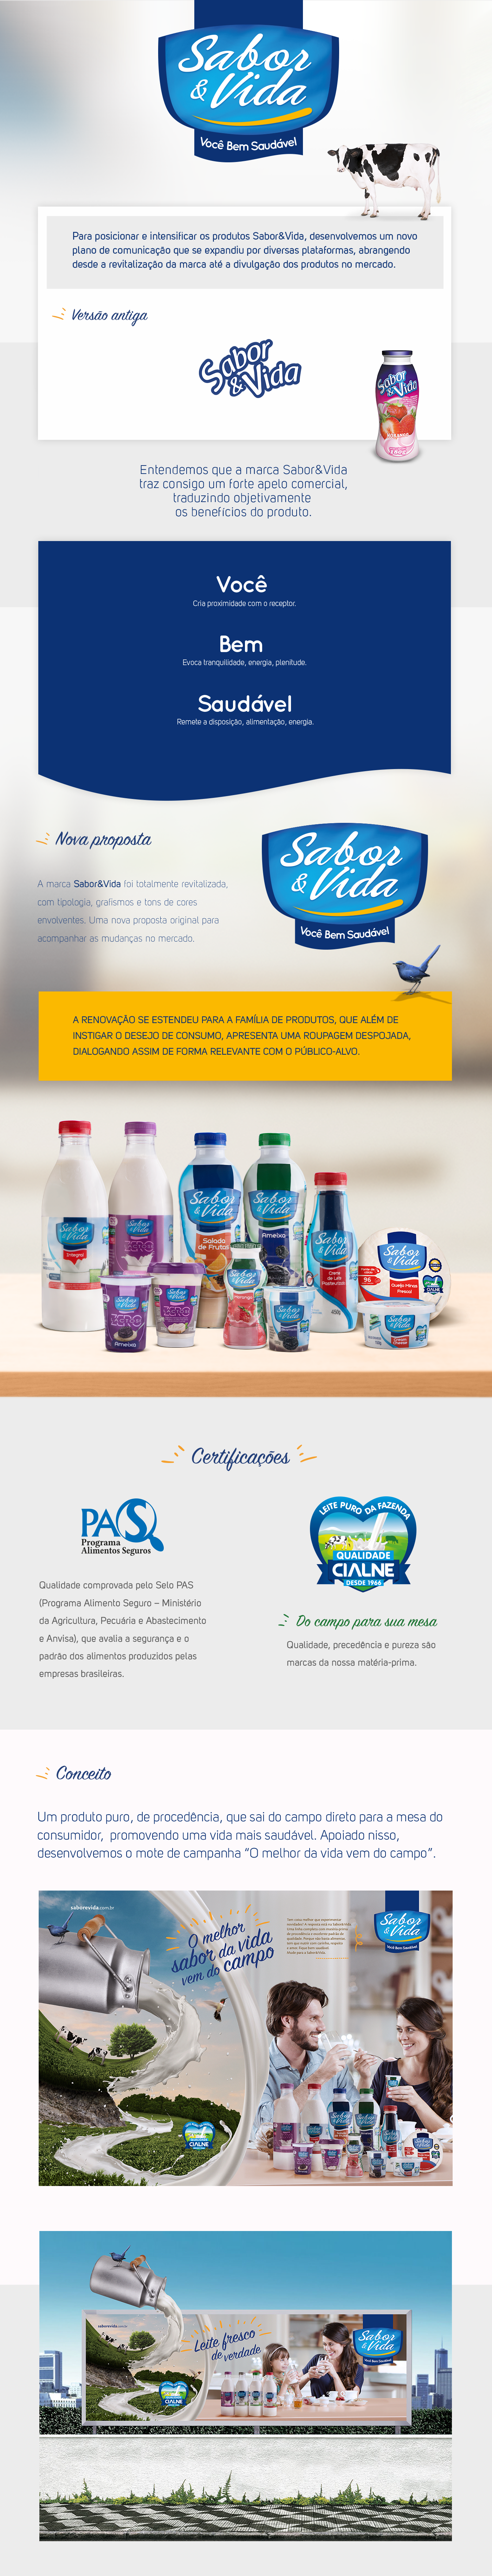 saborevida embalagem packing sabor&vida Ilustração cialne marca conceito campanha PDV